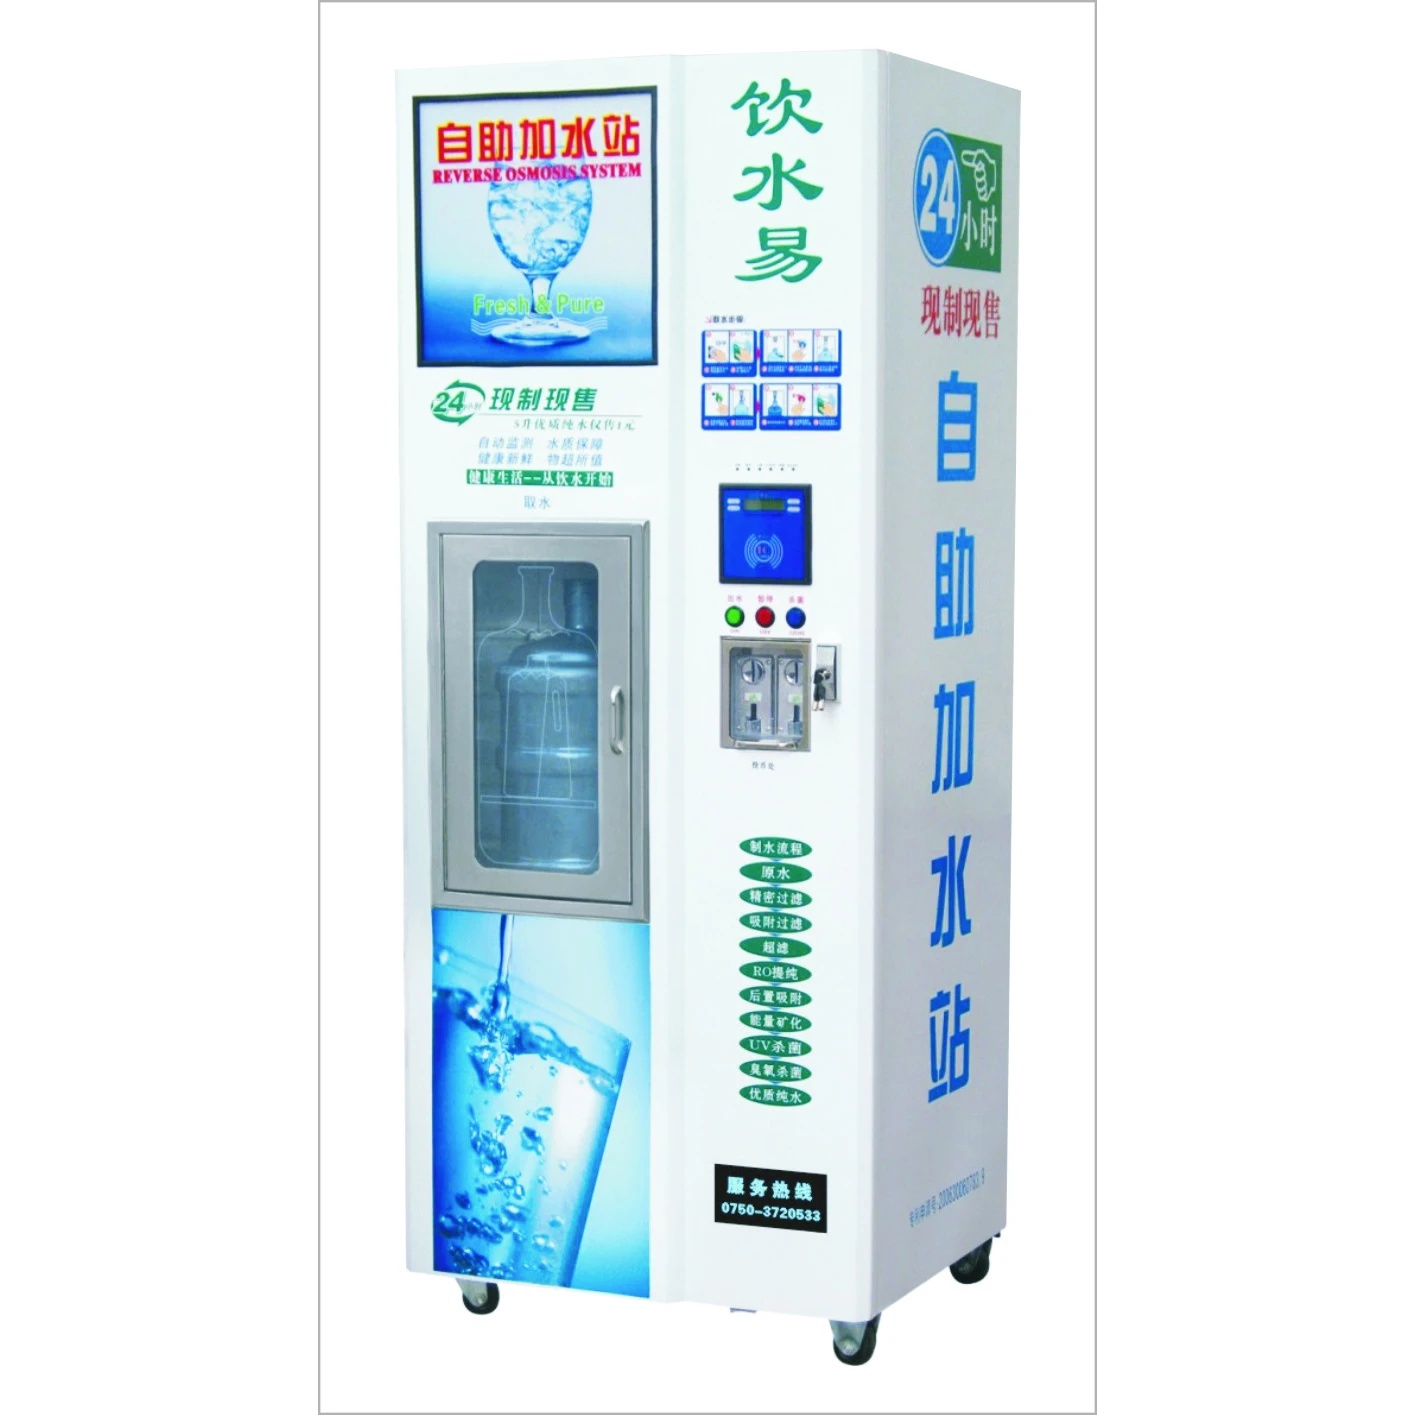 Аппарат для питьевой воды. Автомат торговый для воды ro 300a (+LCD). Автомат для питьевой воды Lamo. Вендинговый аппарат доочистки воды Фрост 200. Автомат с бутилированной водой.